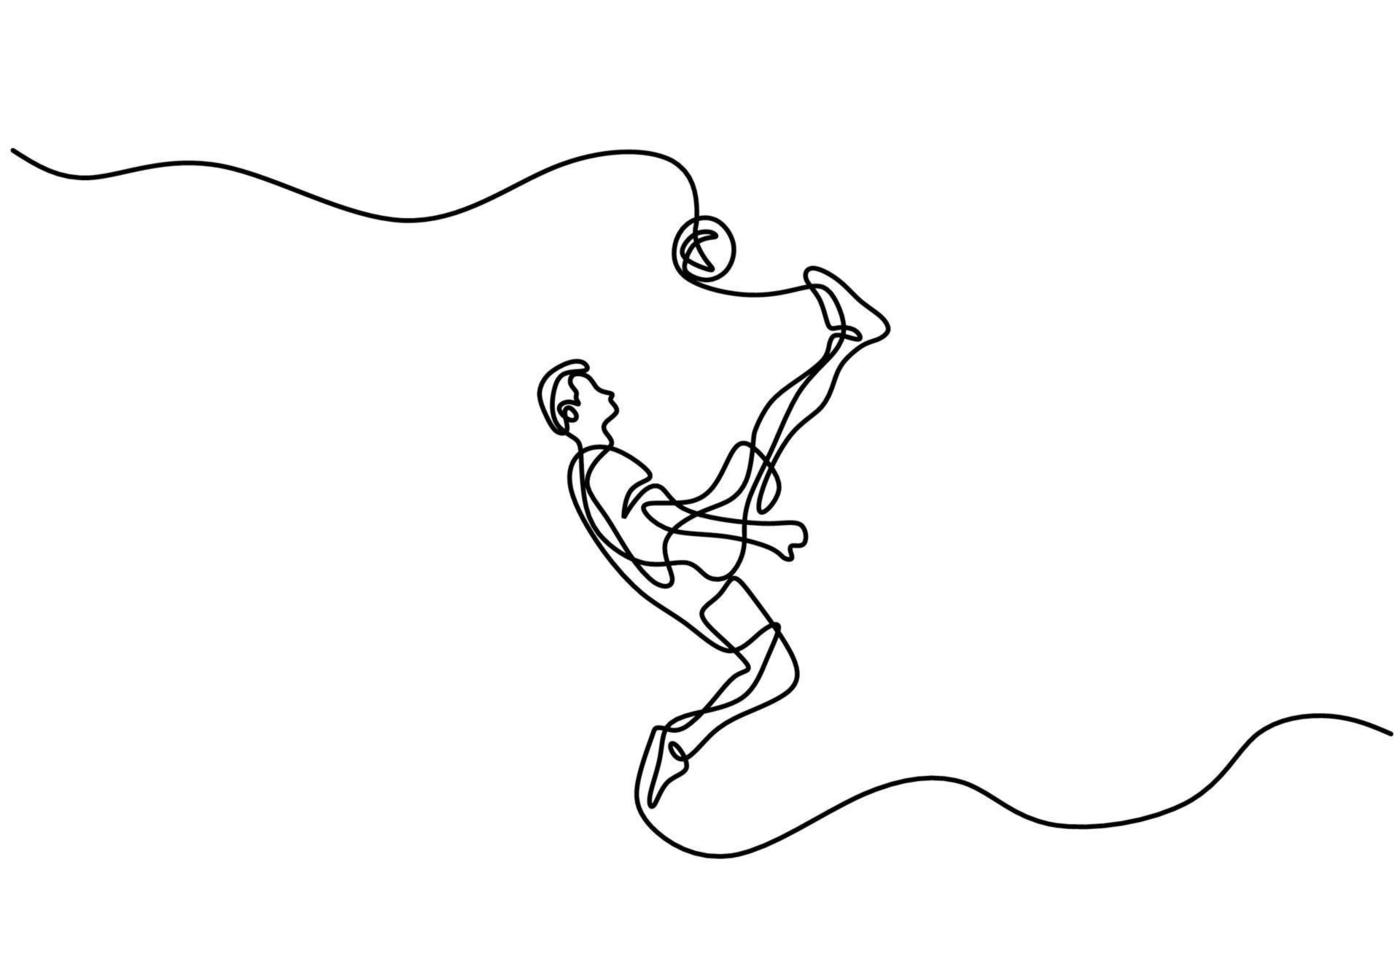 un disegno di una linea continua di giovane calciatore professionista che spara la palla con la tecnica di calcio in bicicletta isolato su priorità bassa bianca. concetto di sport partita di calcio. illustrazione vettoriale